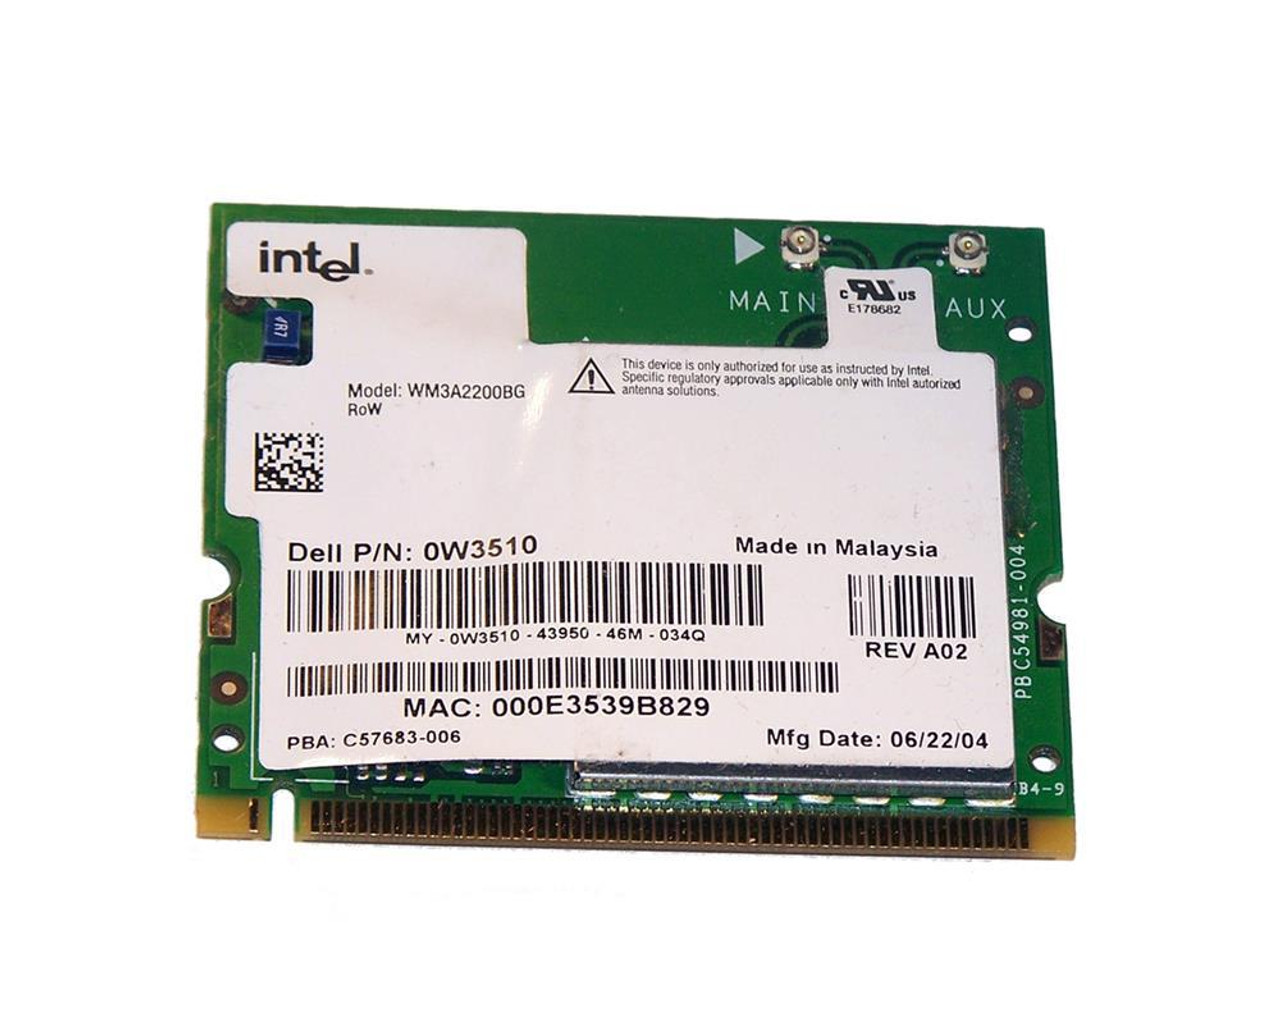 W3510 Dell Inspiron 700m Card CIRCUIT NETWORK MINI PCI Card